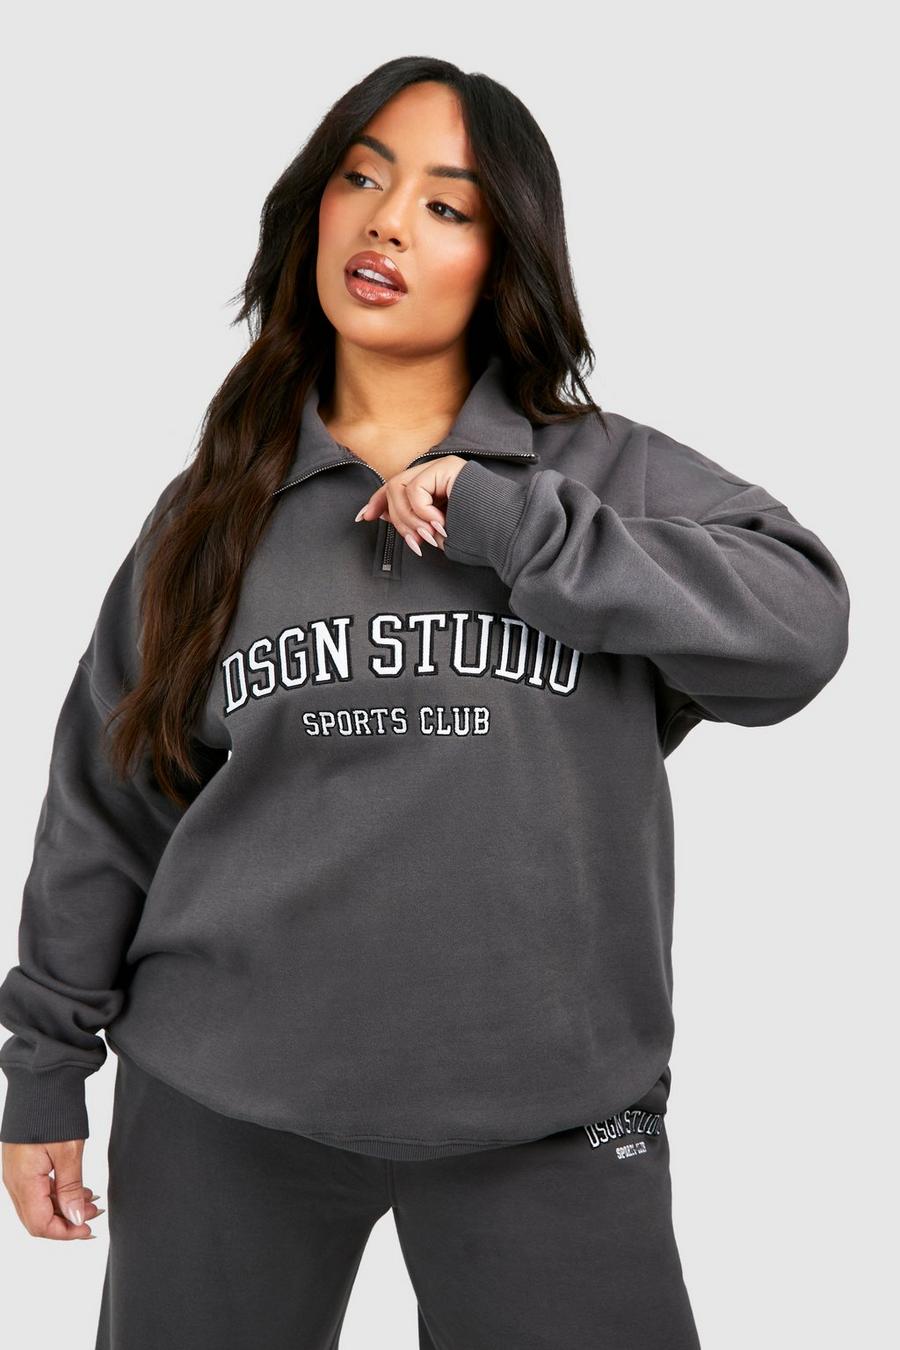 Oversize Sweatshirt mit Dsgn Studio Applikation und halbem Reißverschluss, Charcoal